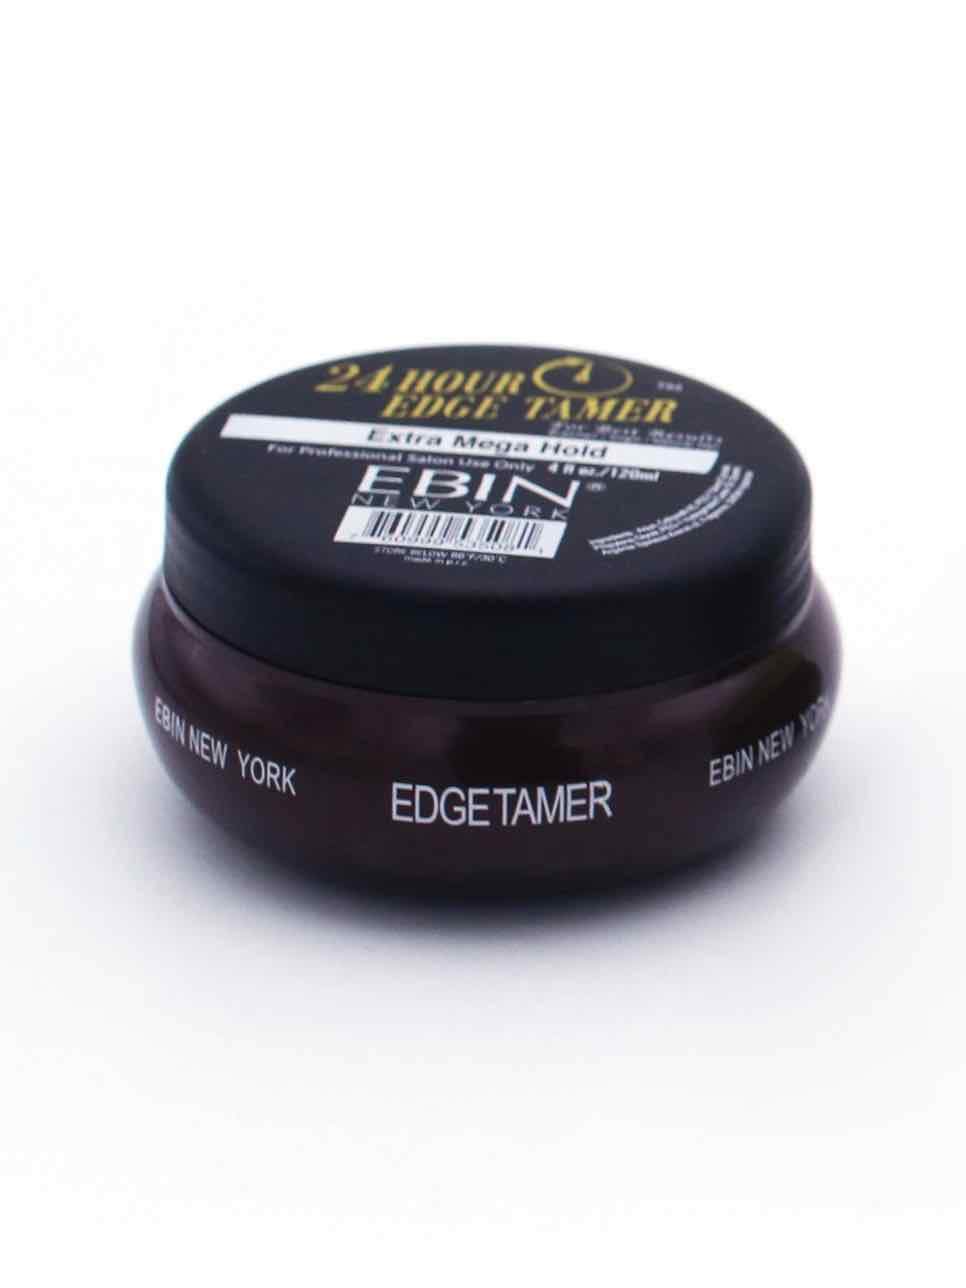 Ebin 24-Hour Edge Tamer Extra Mega Hold (Black Top)